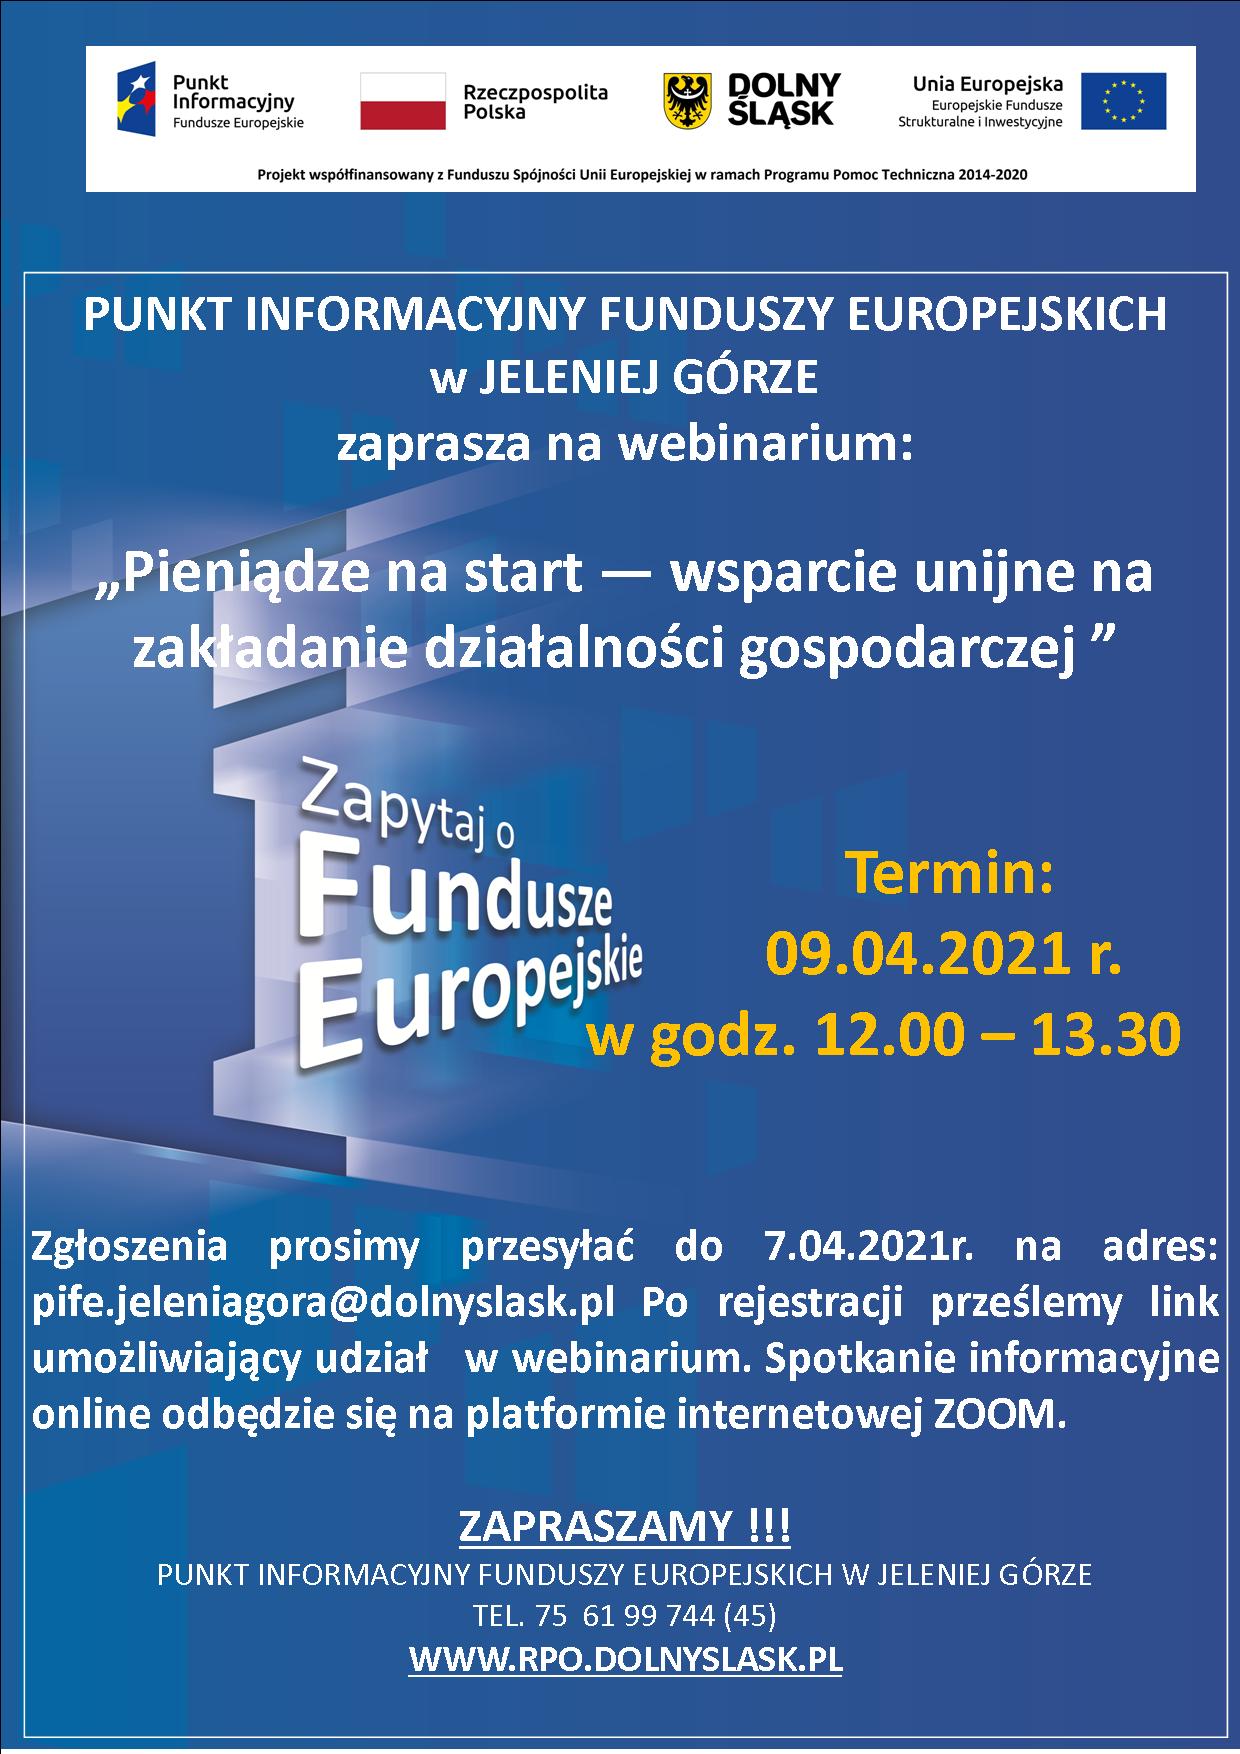 Punkt Informacyjny Funduszy Europejskich w Jeleniej Górze zaprasza  na webinarium pt. „Pieniądze na start – wsparcie unijne na zakładanie działalności gospodarczej”   –  9 kwietnia 2021 r.